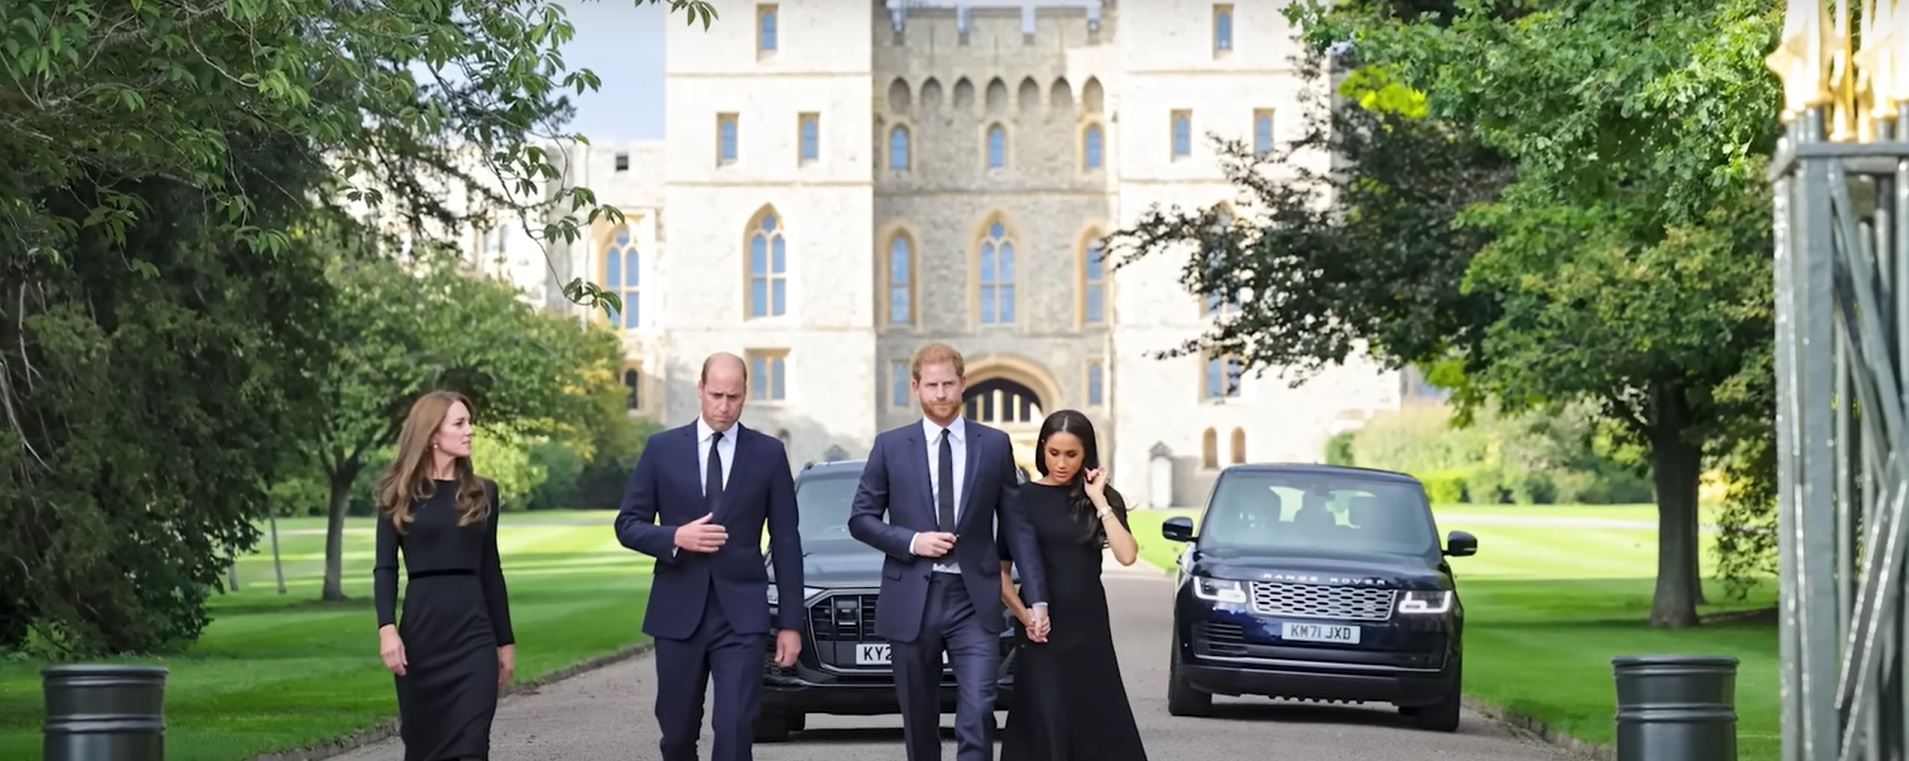 Újra együtt: Vilmos herceg megható gesztust tett Harry herceg felé - videó